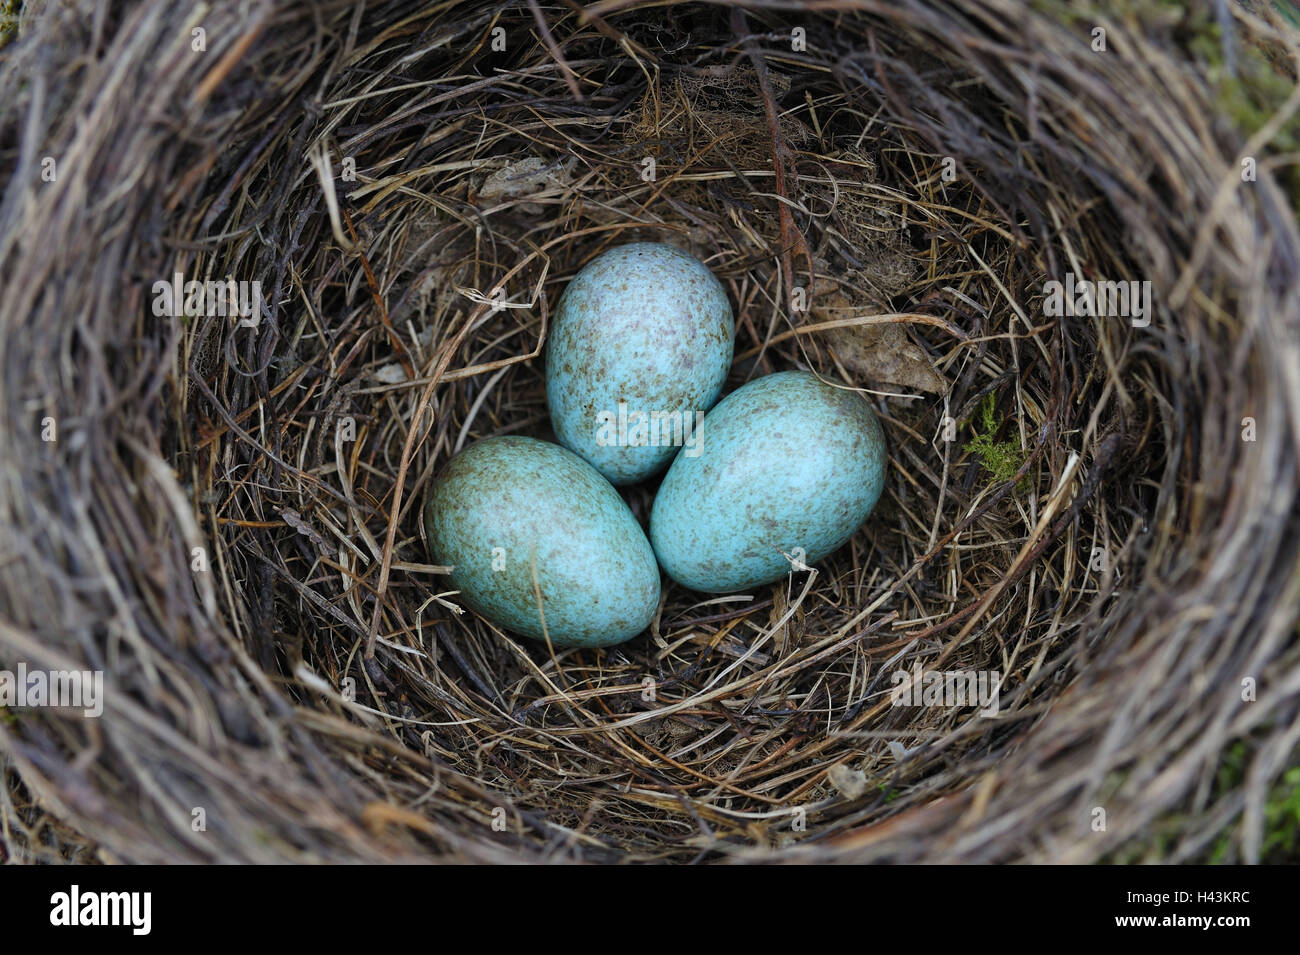 bird-nest with eggs, Stock Photo